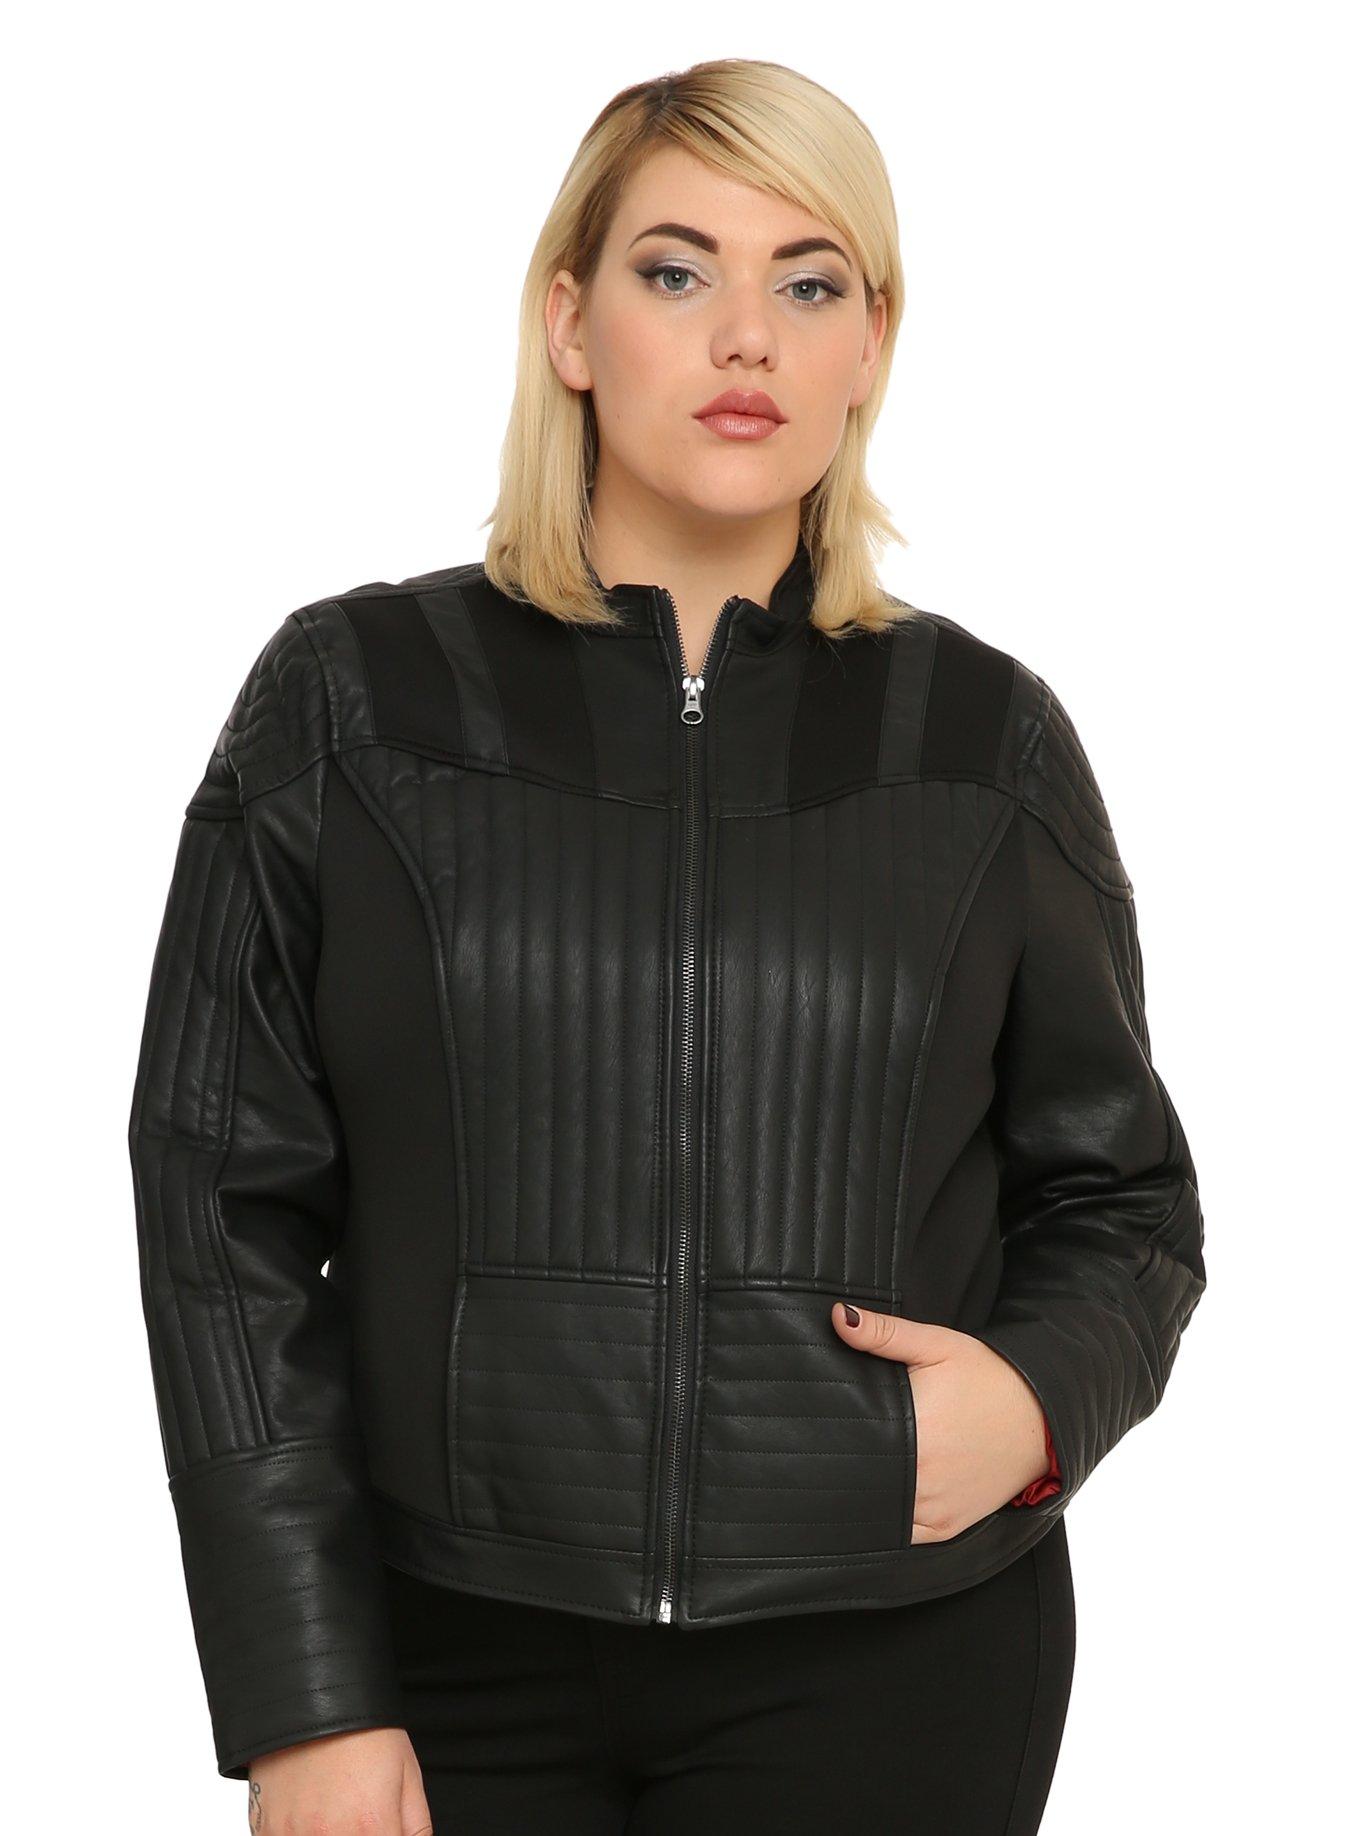 Star Wars Darth Vader Girls Faux Leather Jacket Plus Size, BLACK, hi-res